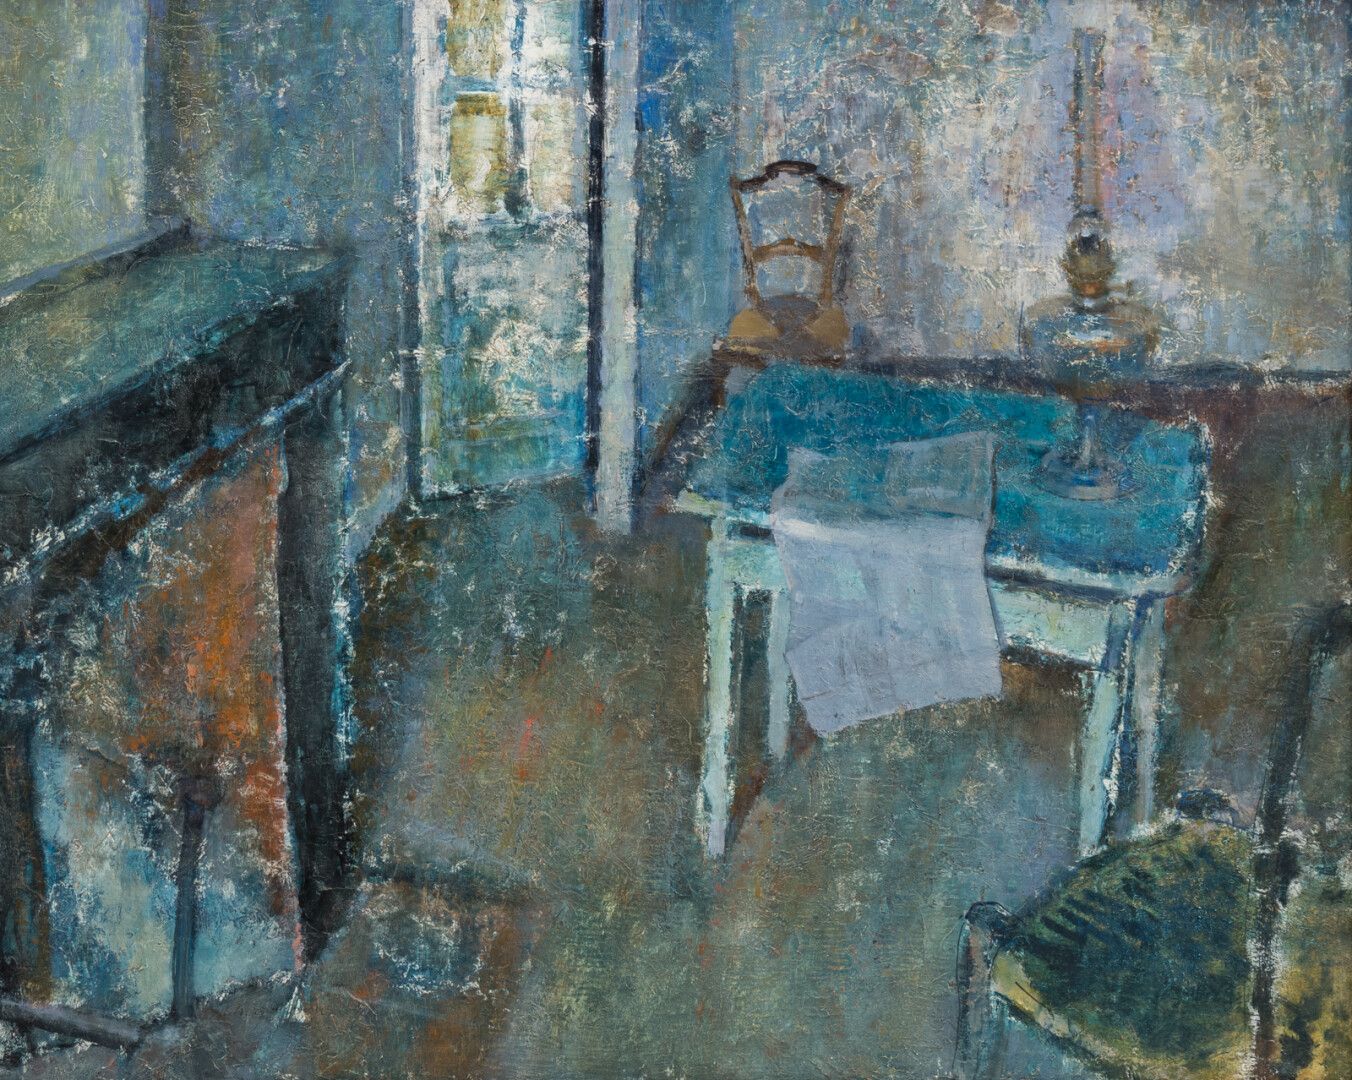 Null 拉乌尔-贝尔古纳(1900-1982)

有油灯的室内

布面油画，右下角的签名几乎无法辨认

81 x 65厘米

(转载于《拉乌尔-贝尔古南，一个&hellip;